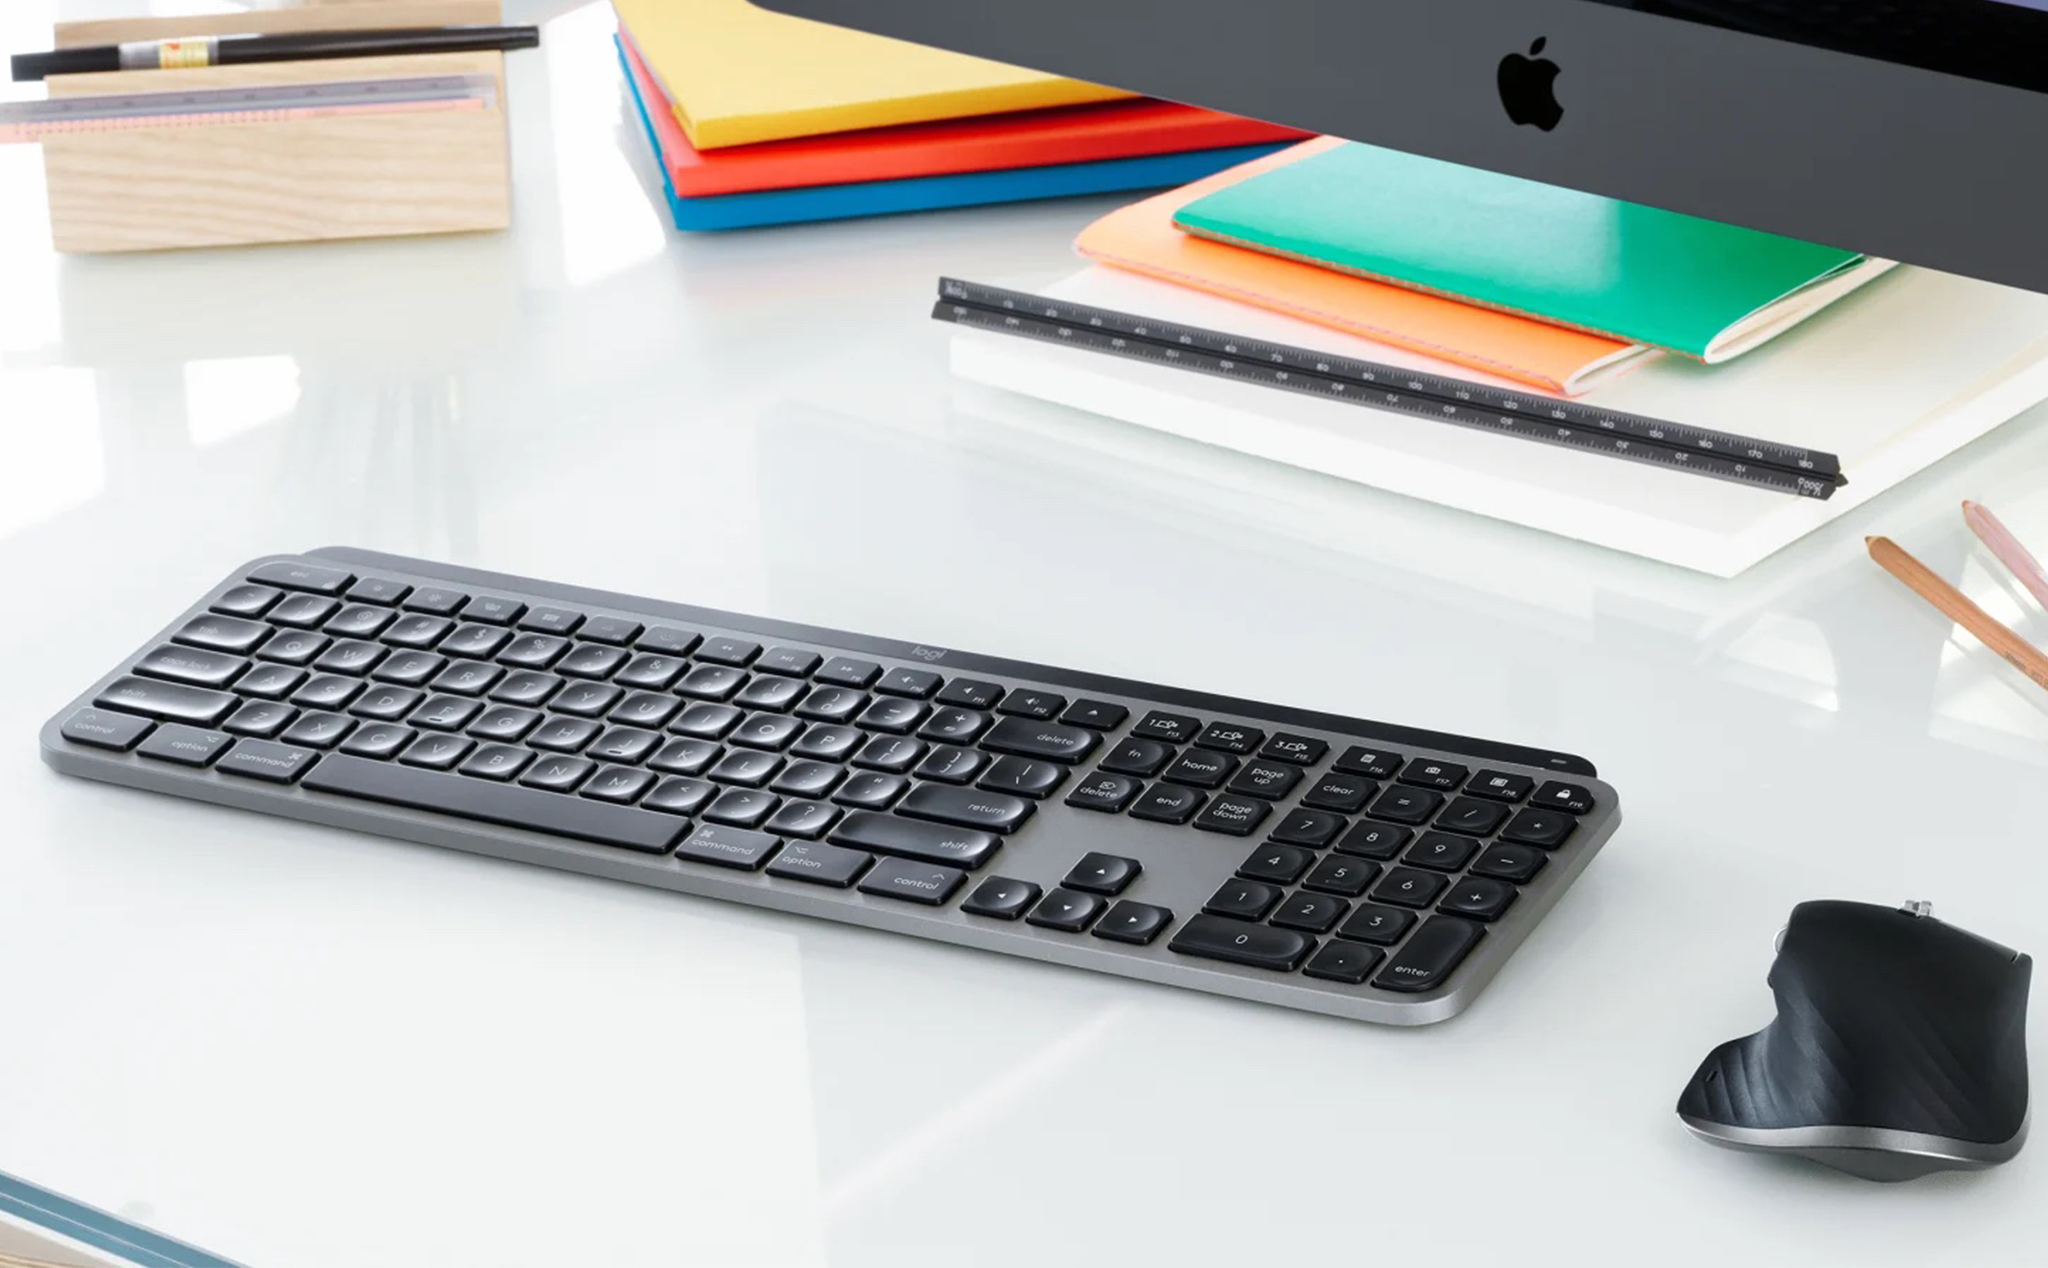 Bạn là một người dùng Mac đích thực và muốn sở hữu một bàn phím tốt nhất cho thiết bị của mình? Bàn phím MX Keys đến từ Logitech là sự lựa chọn hoàn hảo cho bạn. Với giá cả hợp lý và chất lượng tuyệt vời, bàn phím này sẽ giúp bạn làm việc trên Mac một cách hiệu quả và tiện lợi hơn bao giờ hết.